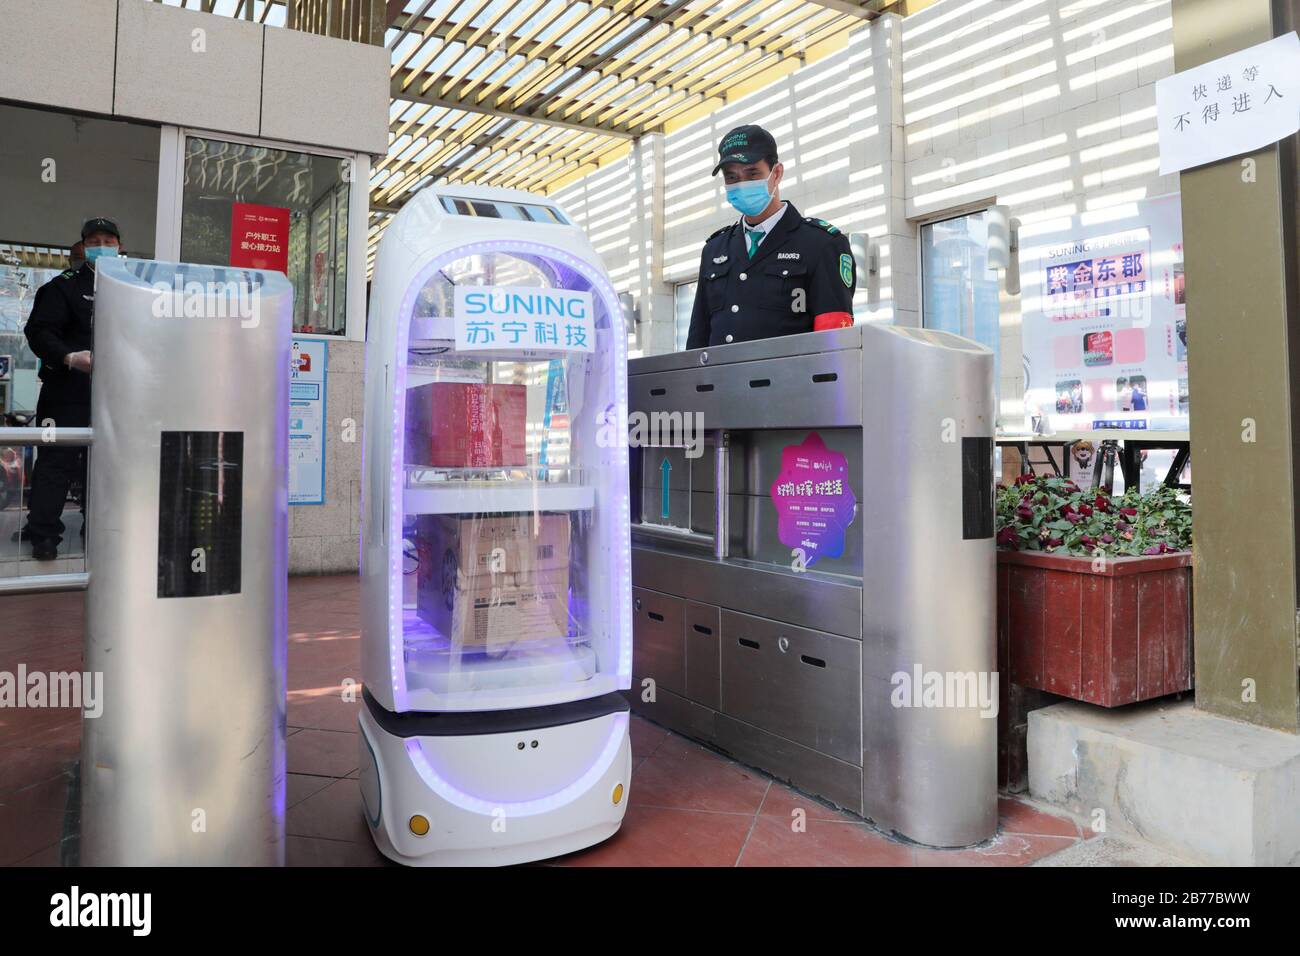 Nanchino. 14 Marzo 2020. Un robot della principale azienda cinese di e-commerce Suning.com consegna merci in un'area residenziale a Nanjing, nella provincia di Jiangsu della Cina orientale, 10 febbraio 2020. Credit: Xinhua/Alamy Live News Foto Stock